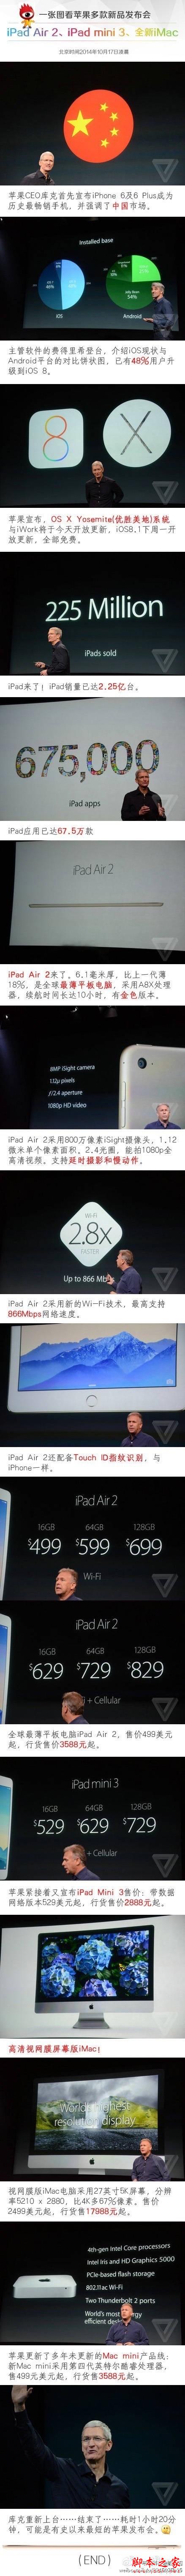 一张图看懂苹果新品发布会ipad air2、mini3、mac全解析